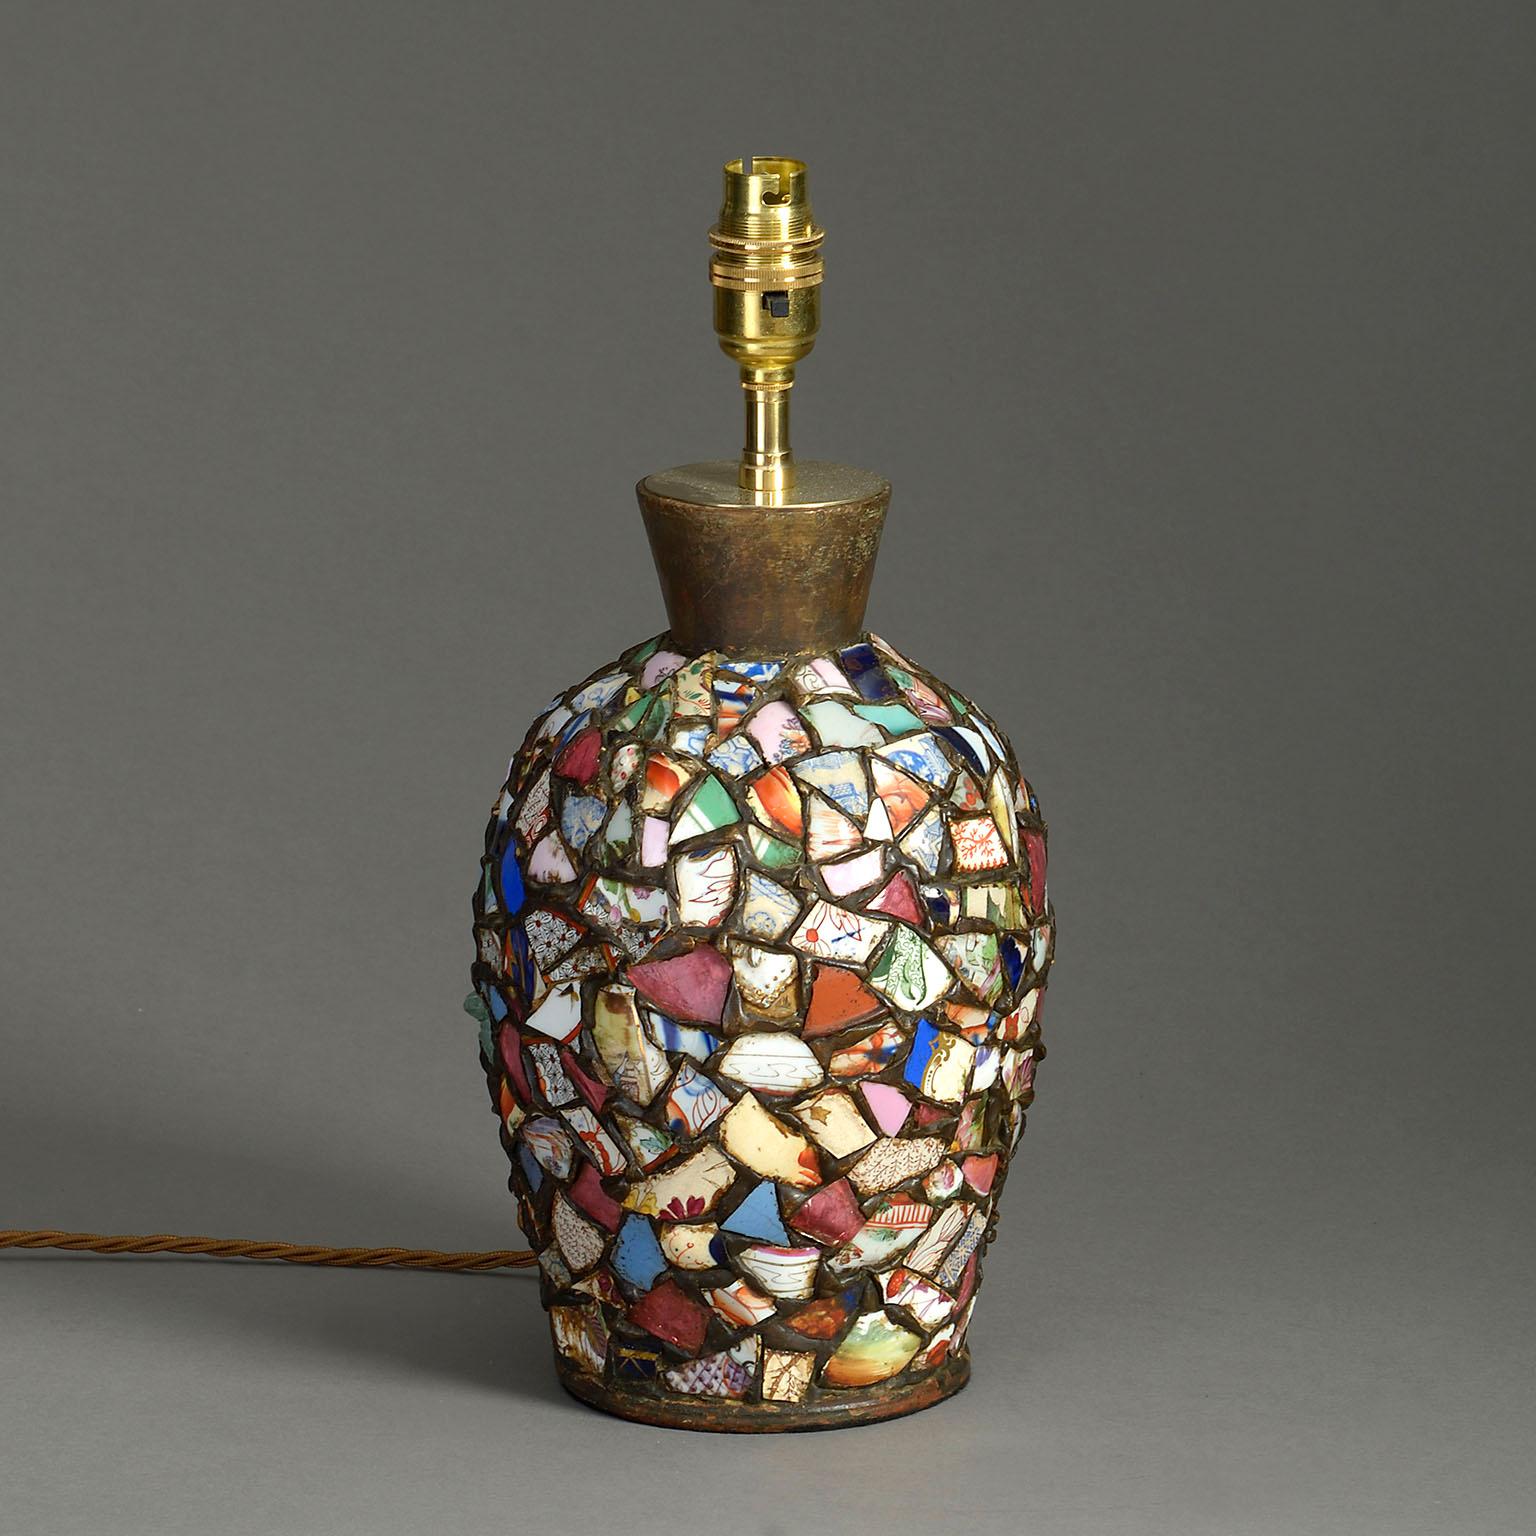 Eine höchst ungewöhnliche Tischlampe, deren Korpus aus einer Collage zerbrochener Porzellanfragmente besteht, die zumeist aus dem späten achtzehnten Jahrhundert stammen und aus China stammen.

Die Abmessungen beziehen sich auf die Vase.

Schirm